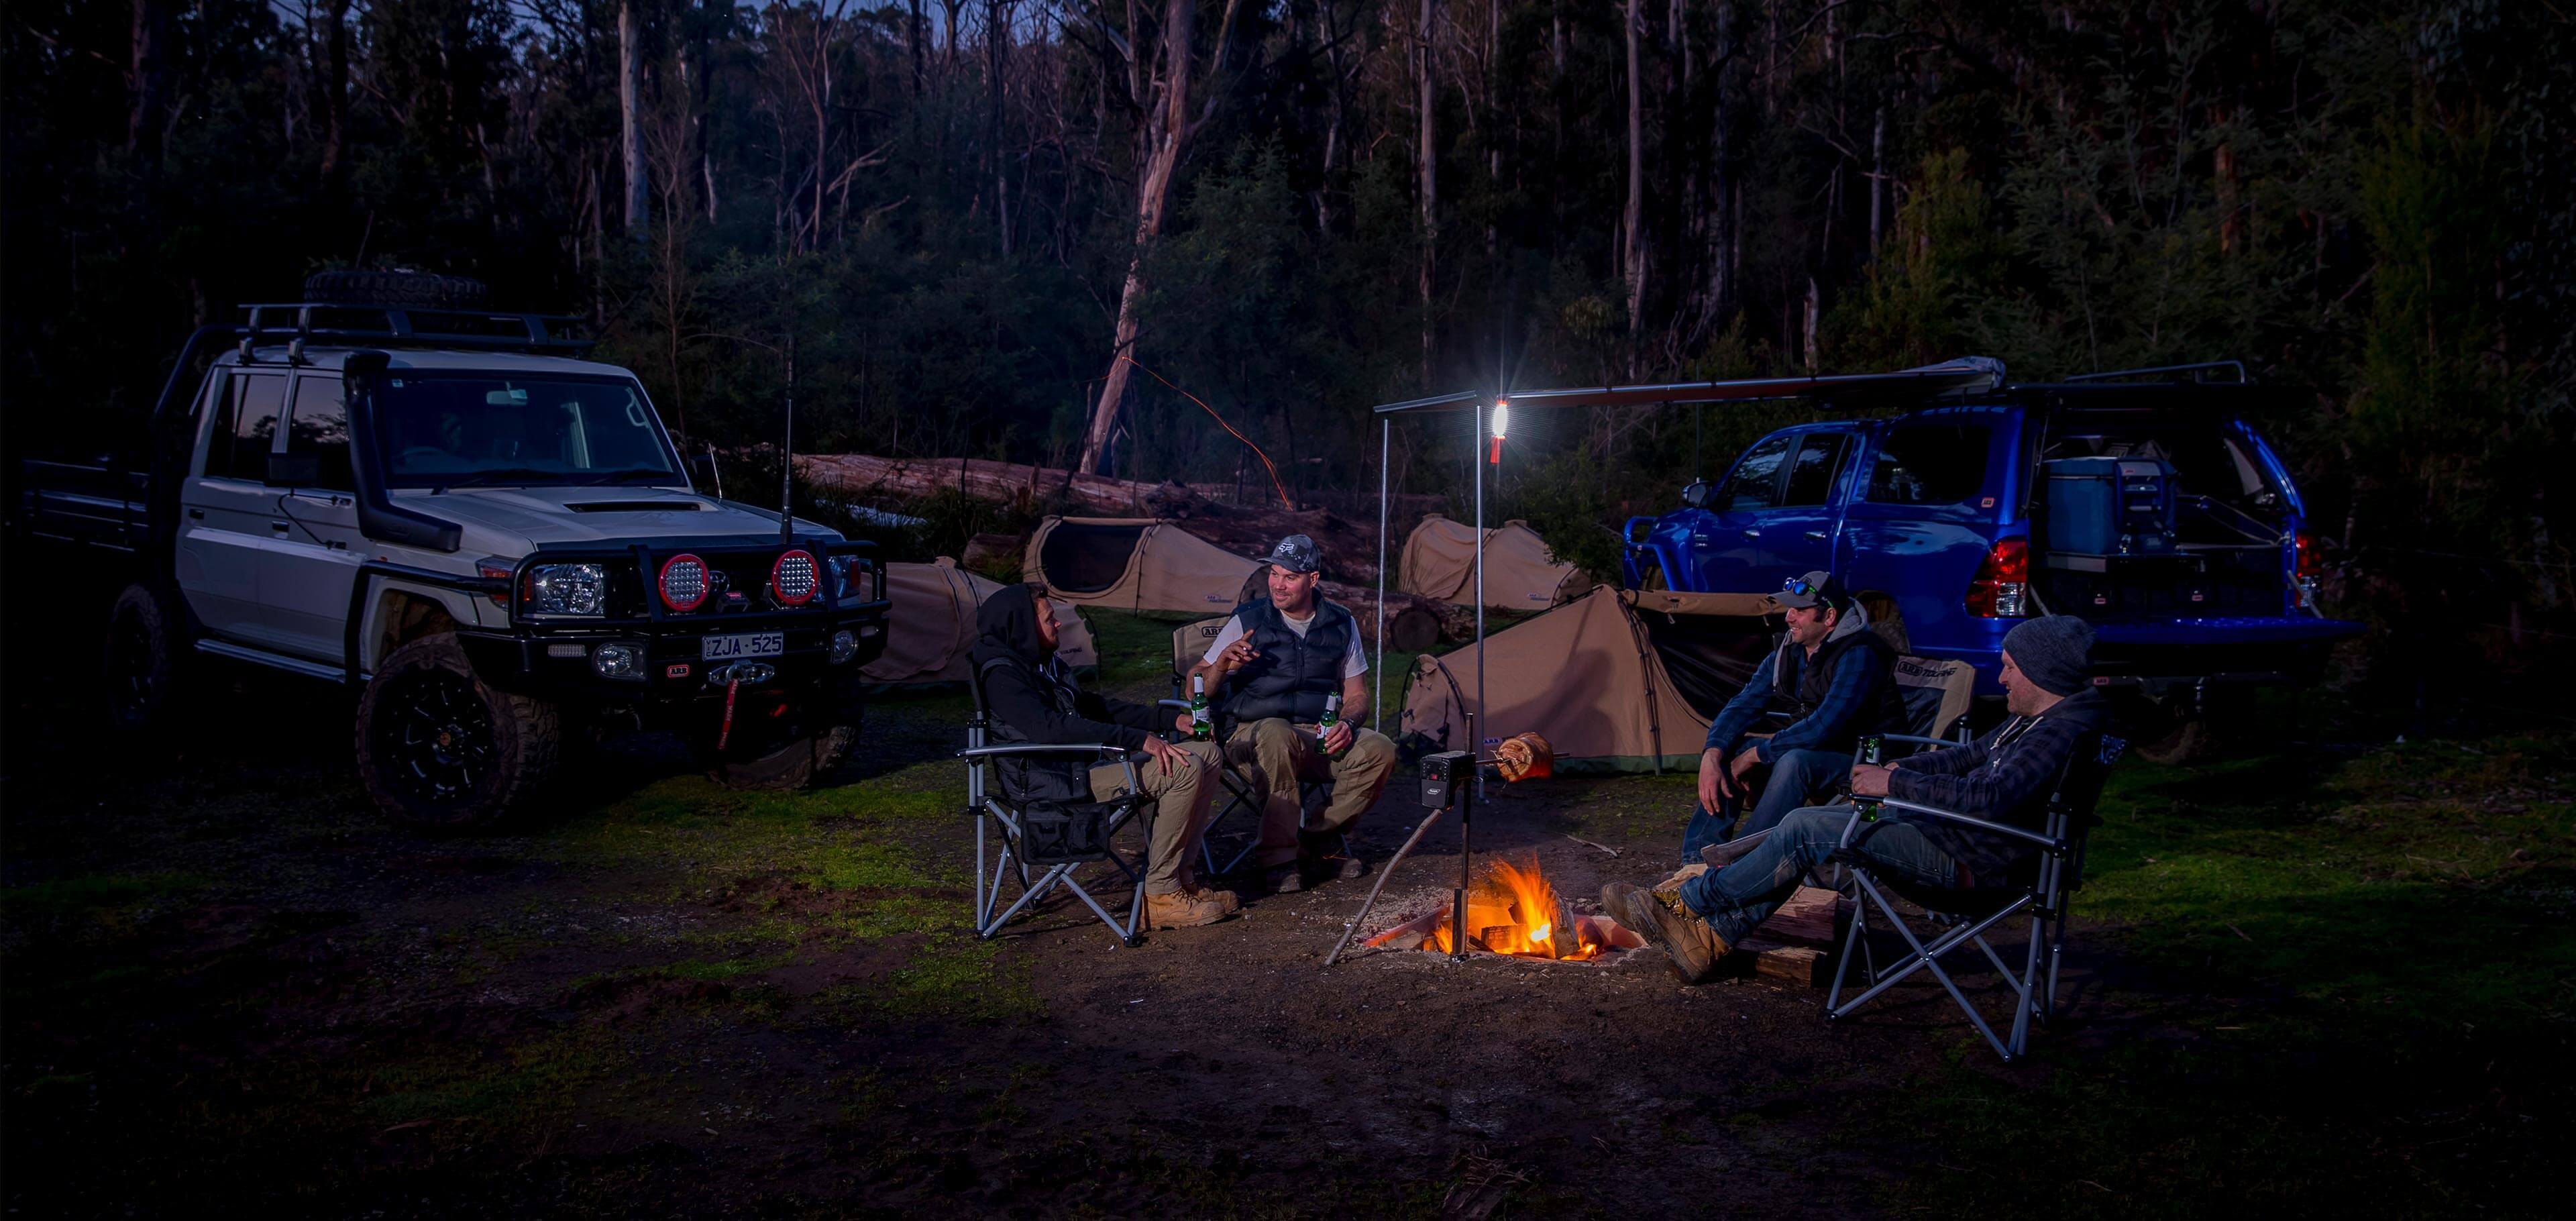 Accesorios Camping